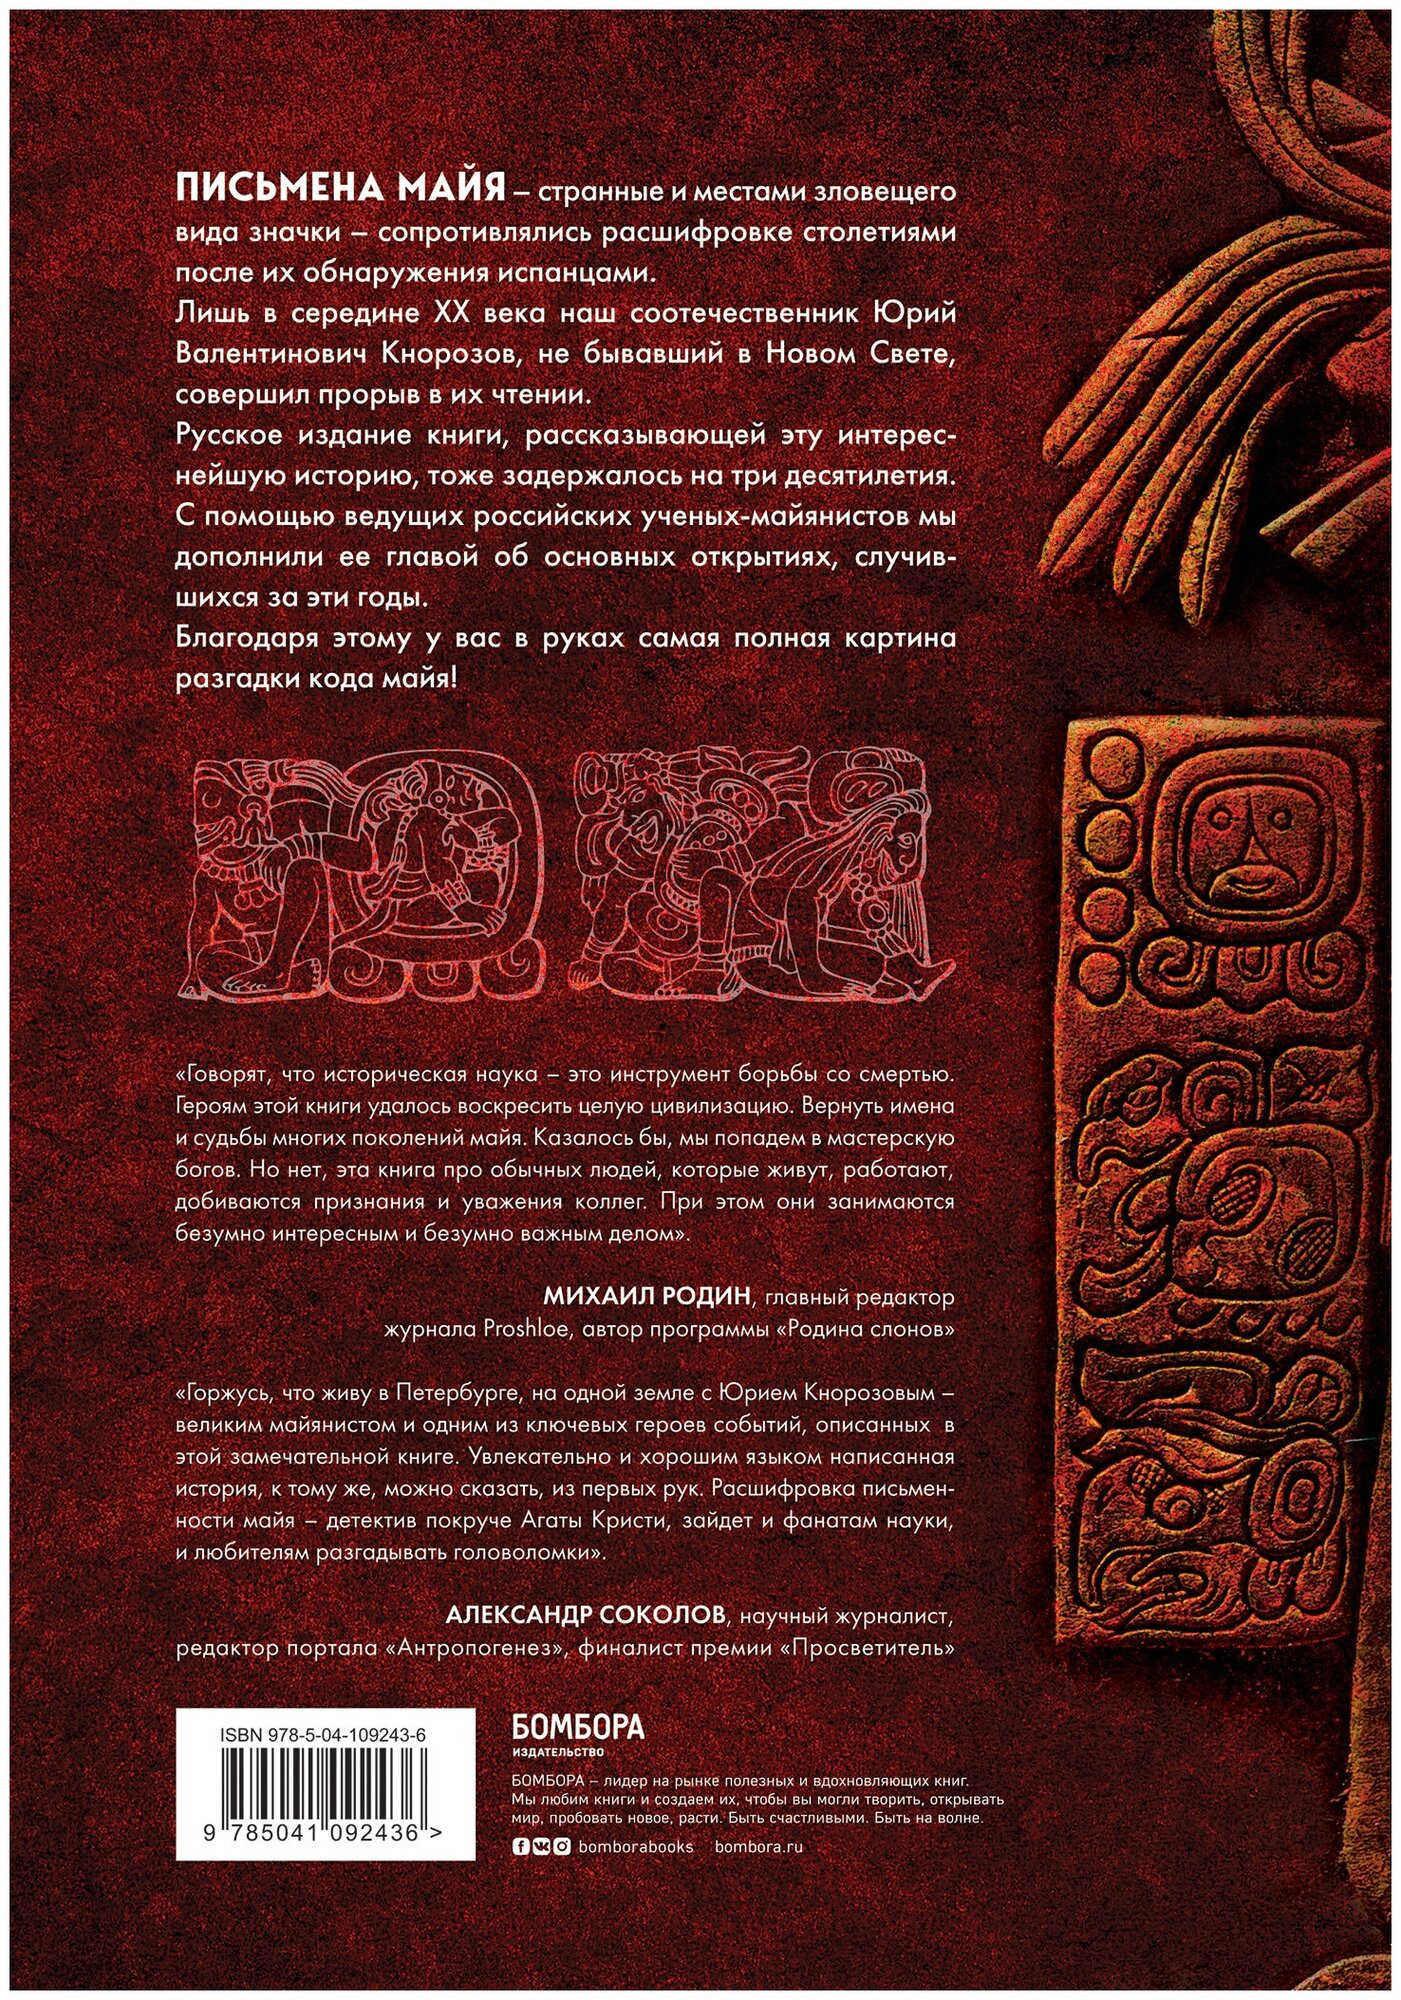 Разгадка кода майя: как ученые расшифровали письменность древней цивилизации - фото №2